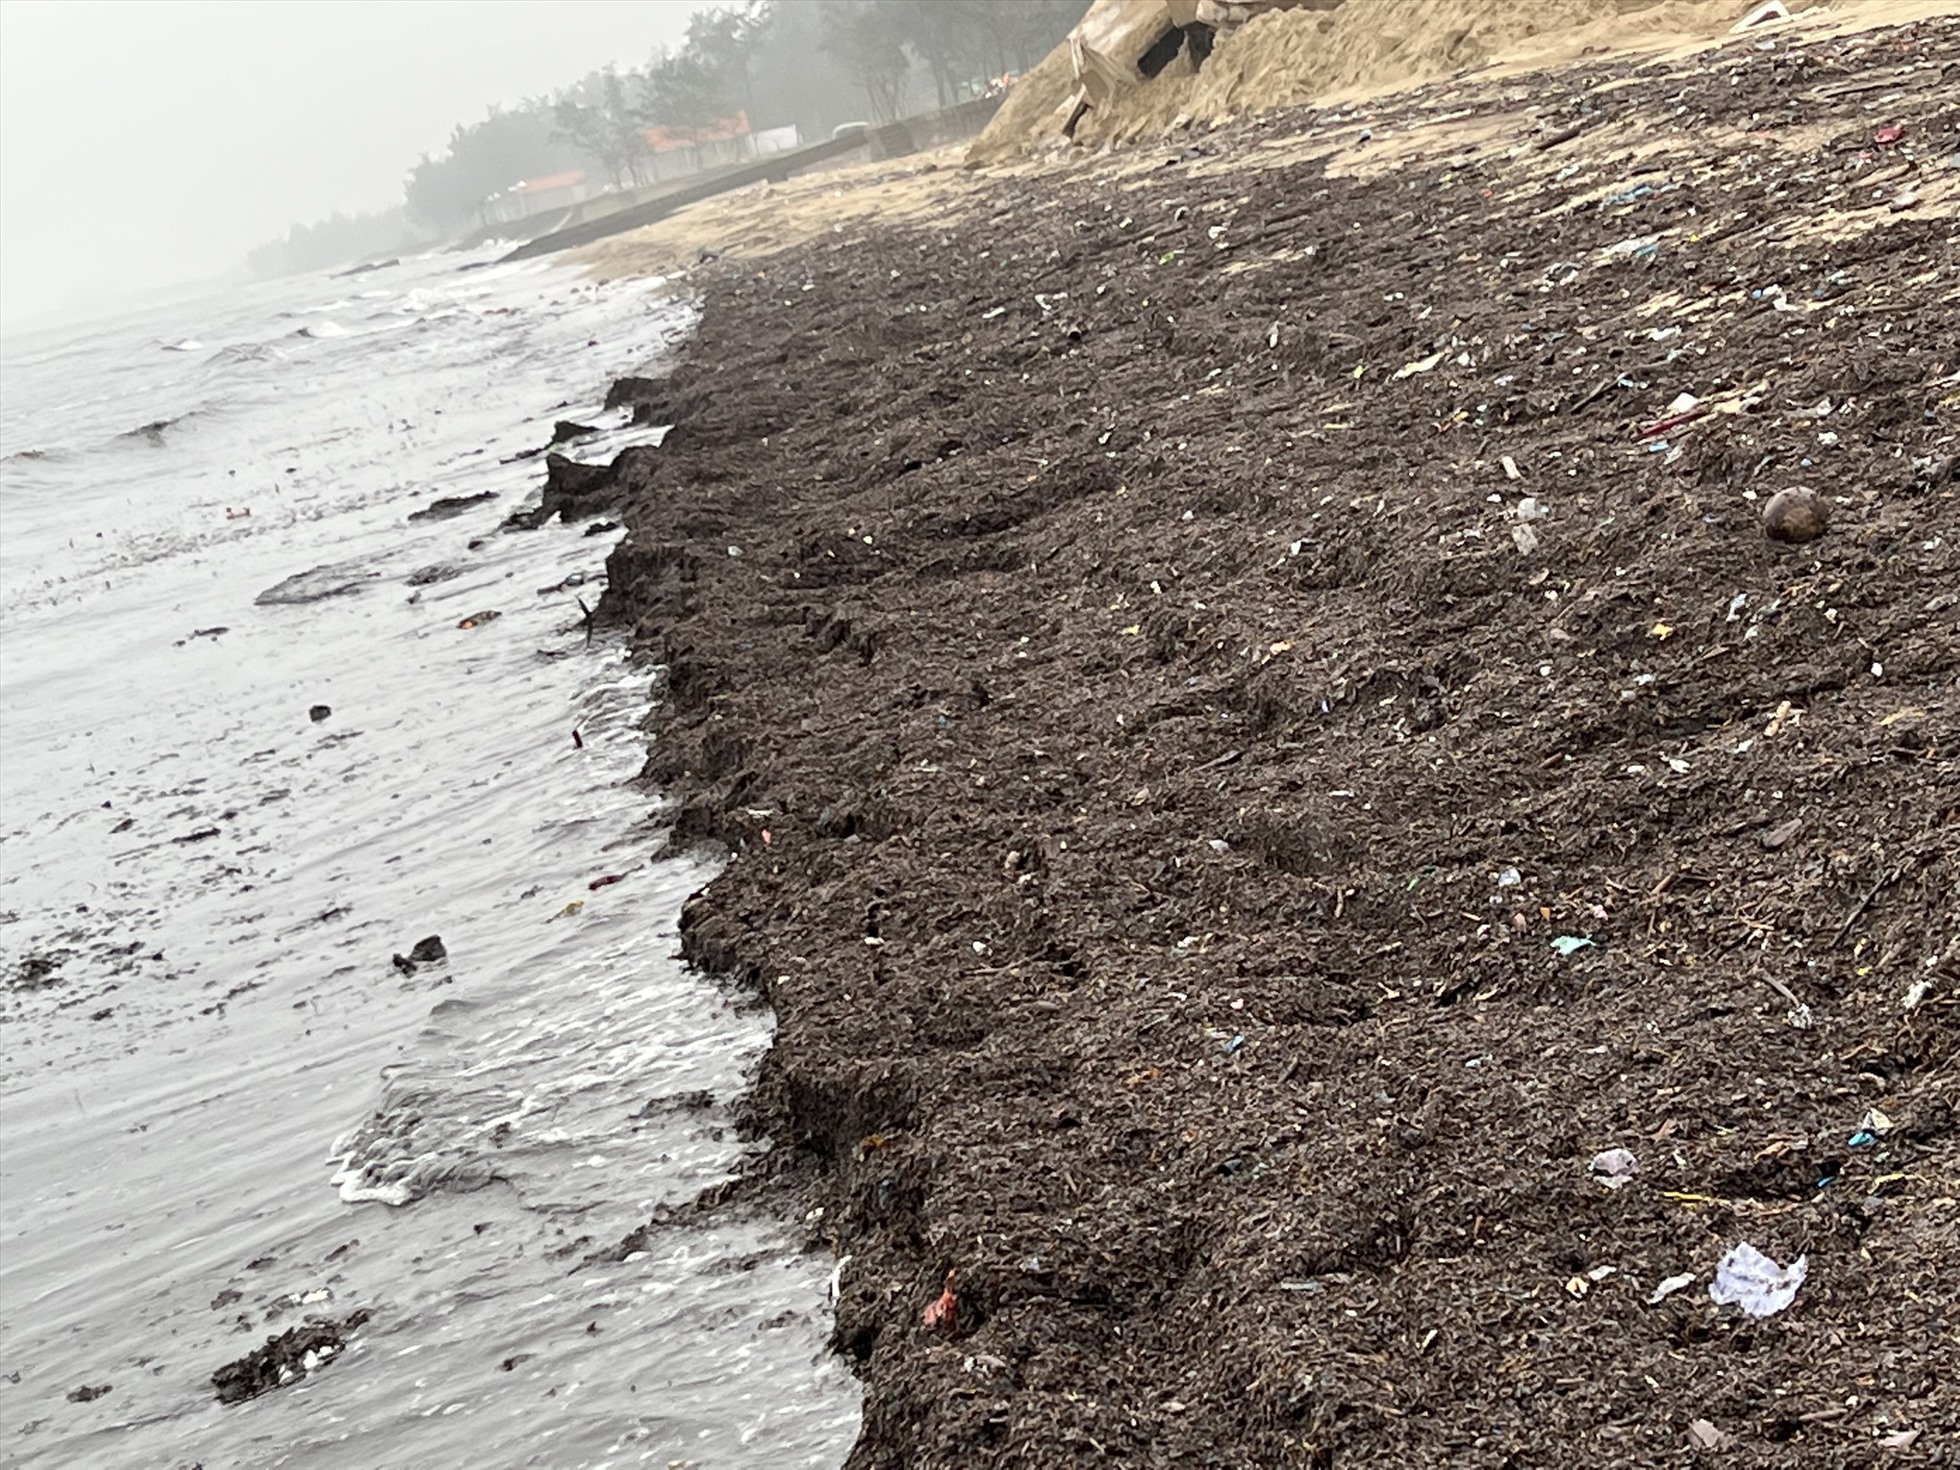 Trưởng Phòng TNMT thị xã Cửa Lò khuyến cáo người dân không vứt rác bừa bãi làm sông, biển ô nhiễm. Ảnh: Quang Đại